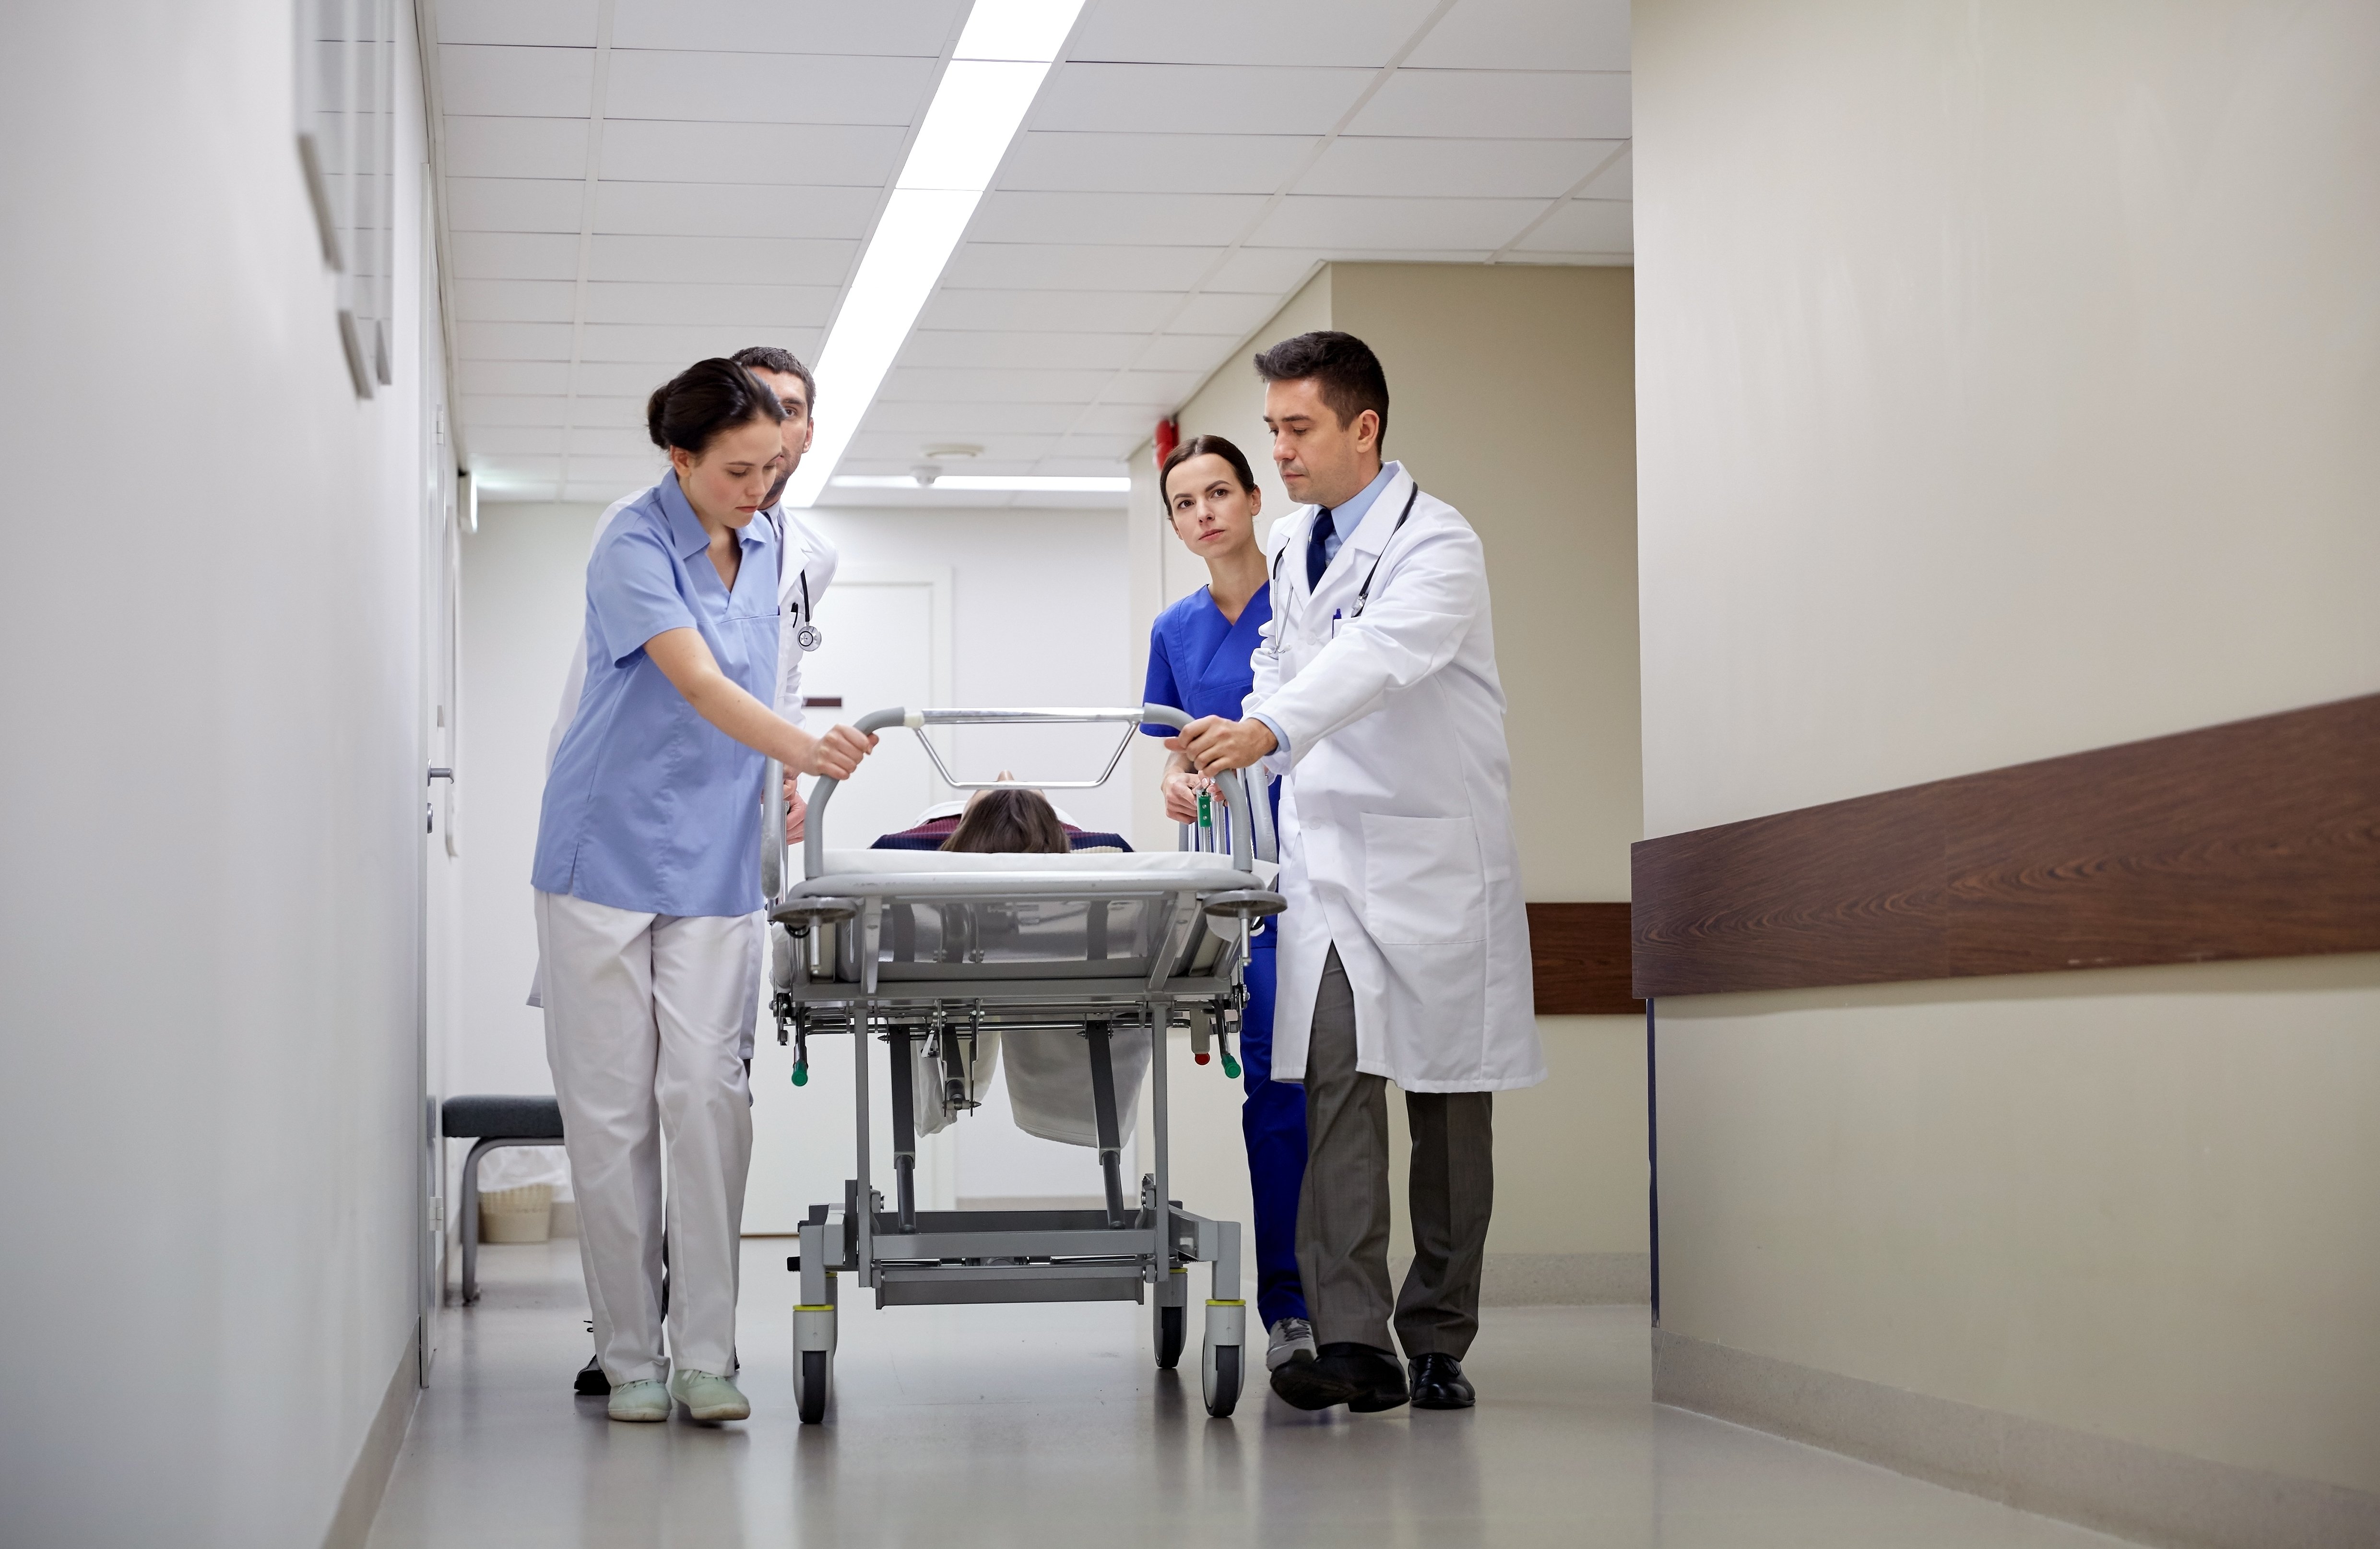 Mediziner und Patient im Notfall auf Krankenhausliege | Quelle: Shutterstock